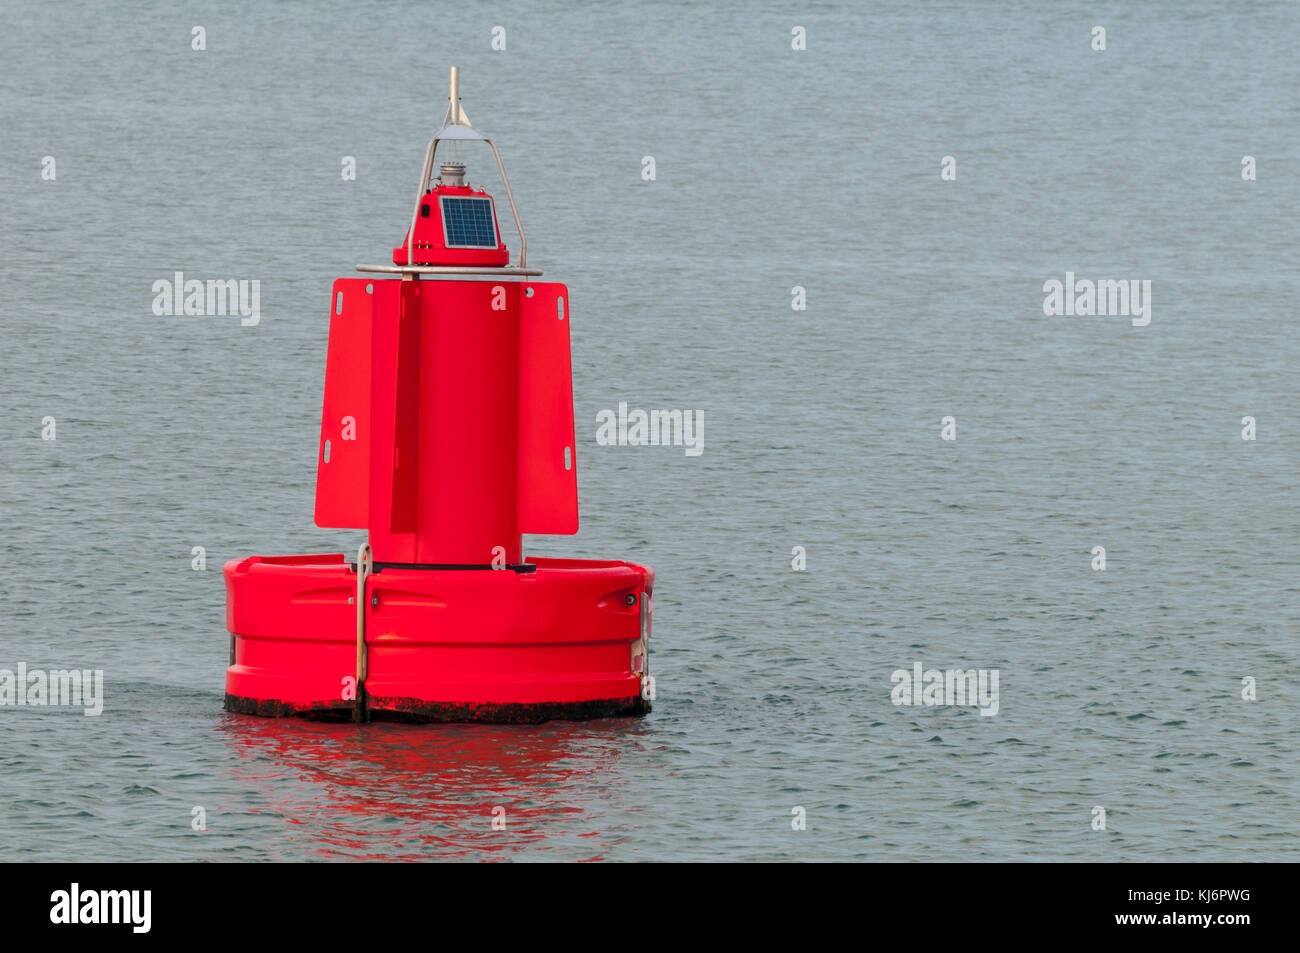 Une bouée rouge est flottant à la surface de l'eau dans le port de Rotterdam aux Pays-Bas. Banque D'Images